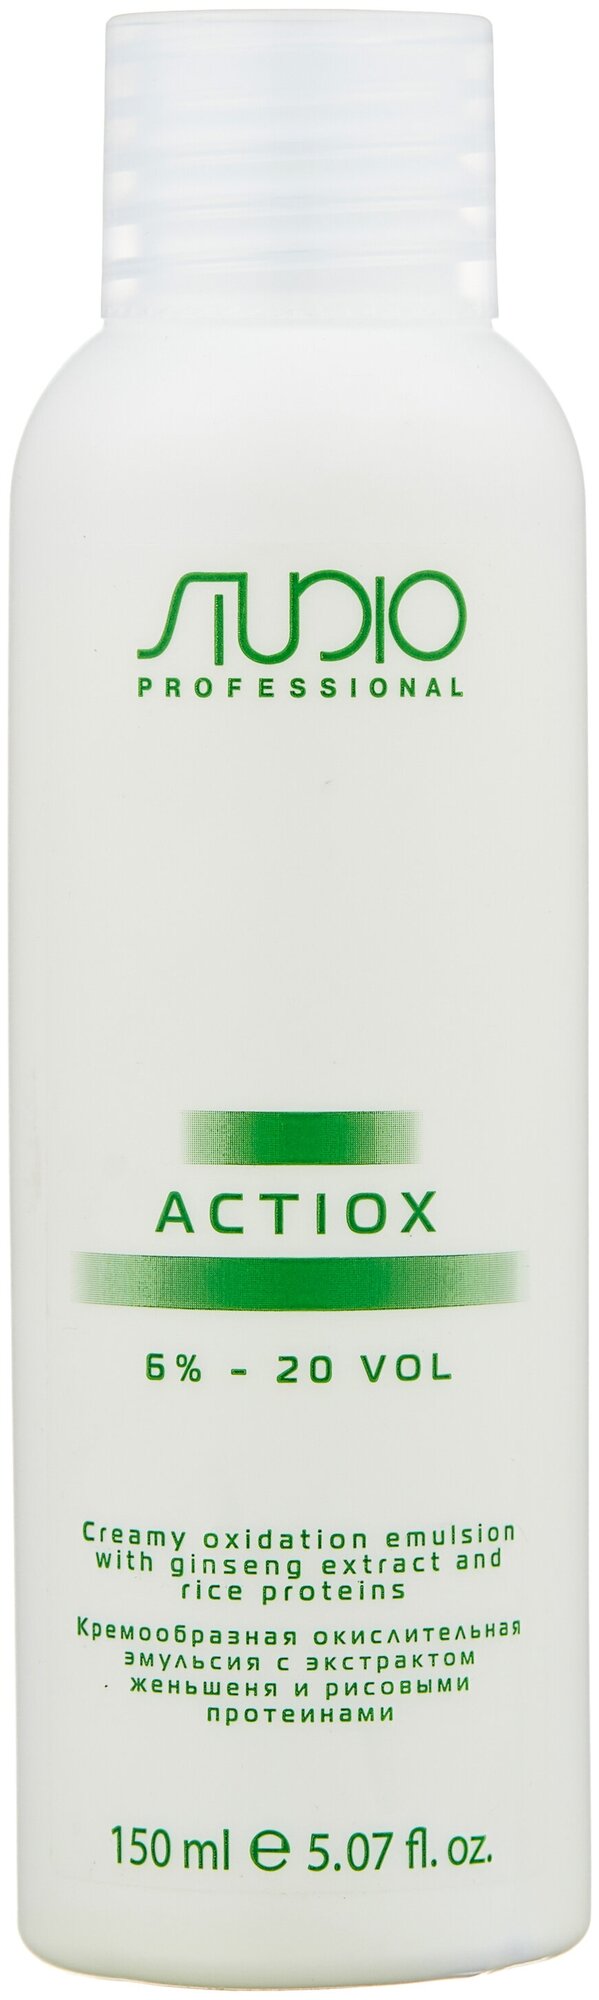 Kapous Кремообразная окислительная эмульсия с экстрактом женьшеня и рисовыми протеинами Studio Professional ActiOx, 6%, 150 мл